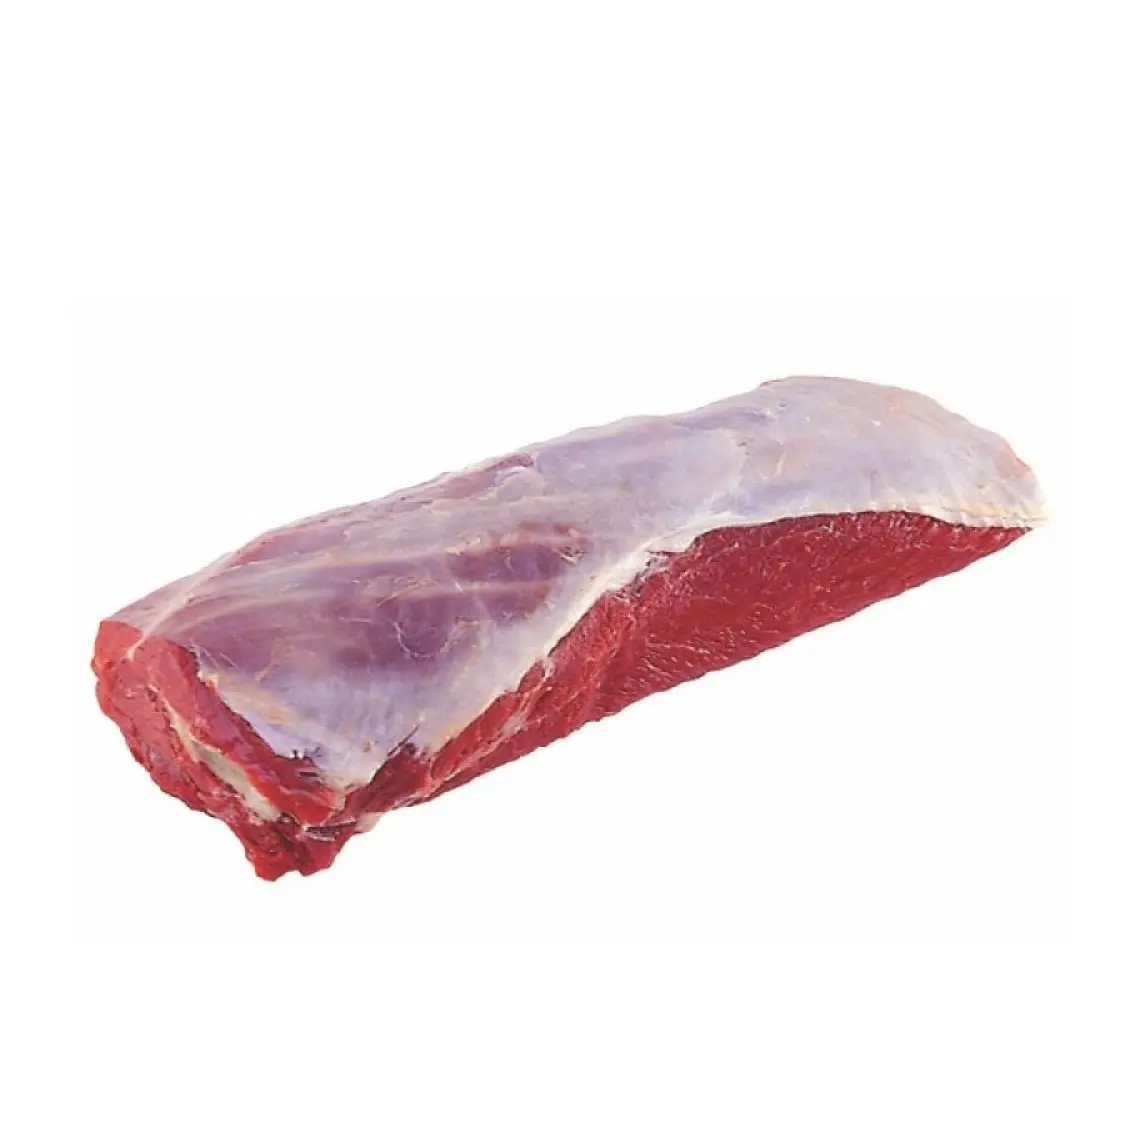 뼈 없는 쇠고기 척 도매 냉동 뼈 없는 쇠고기 굴 블레이드/뼈 없는 안심 Striploin